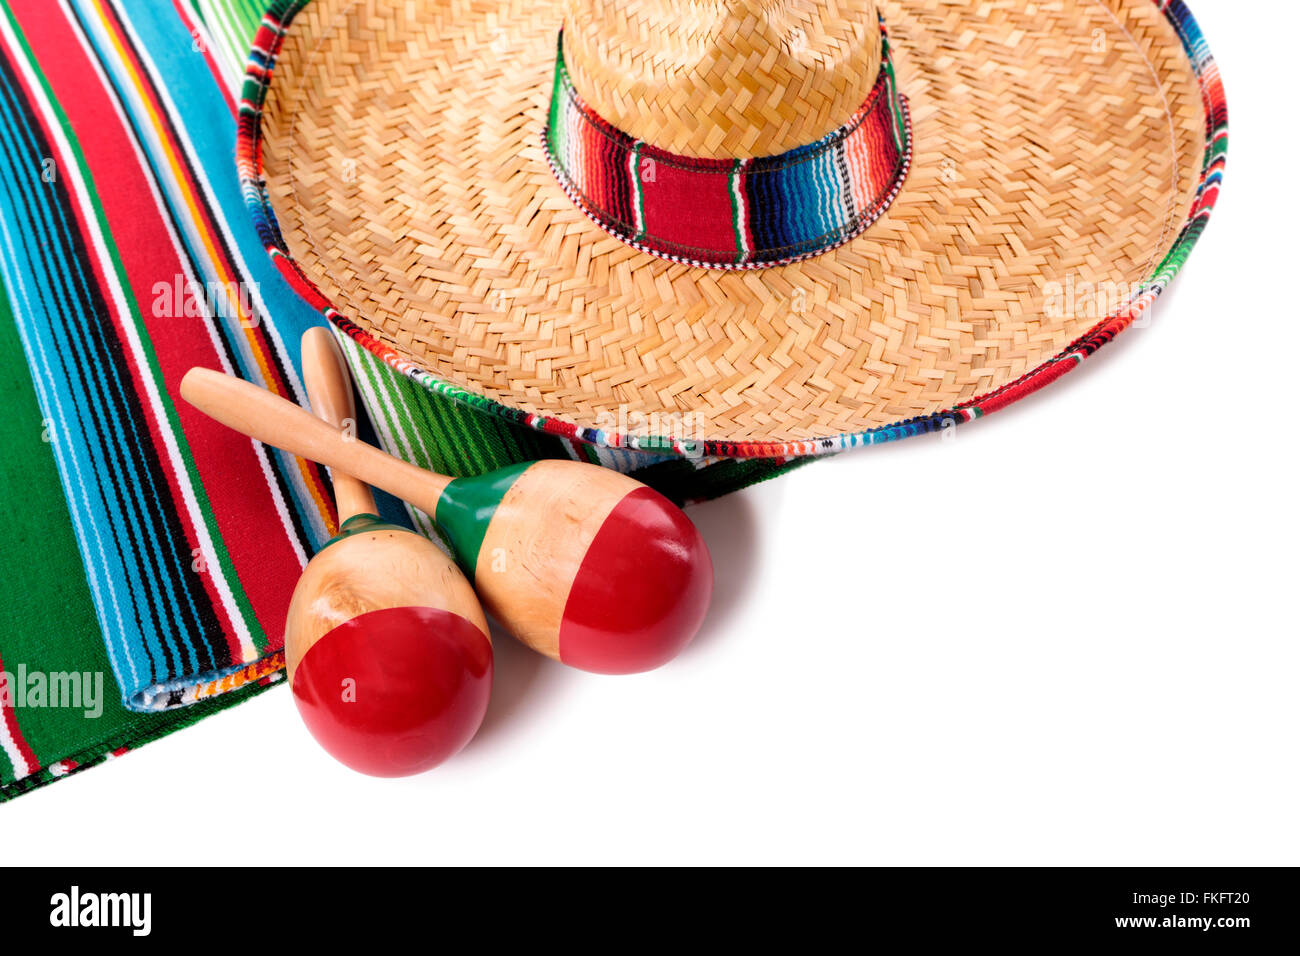 Traditionelle mexikanische Sarape Decke oder Teppich mit Sombrero und Maracas isoliert auf einem weißen Hintergrund.  Platz für Kopie. Stockfoto